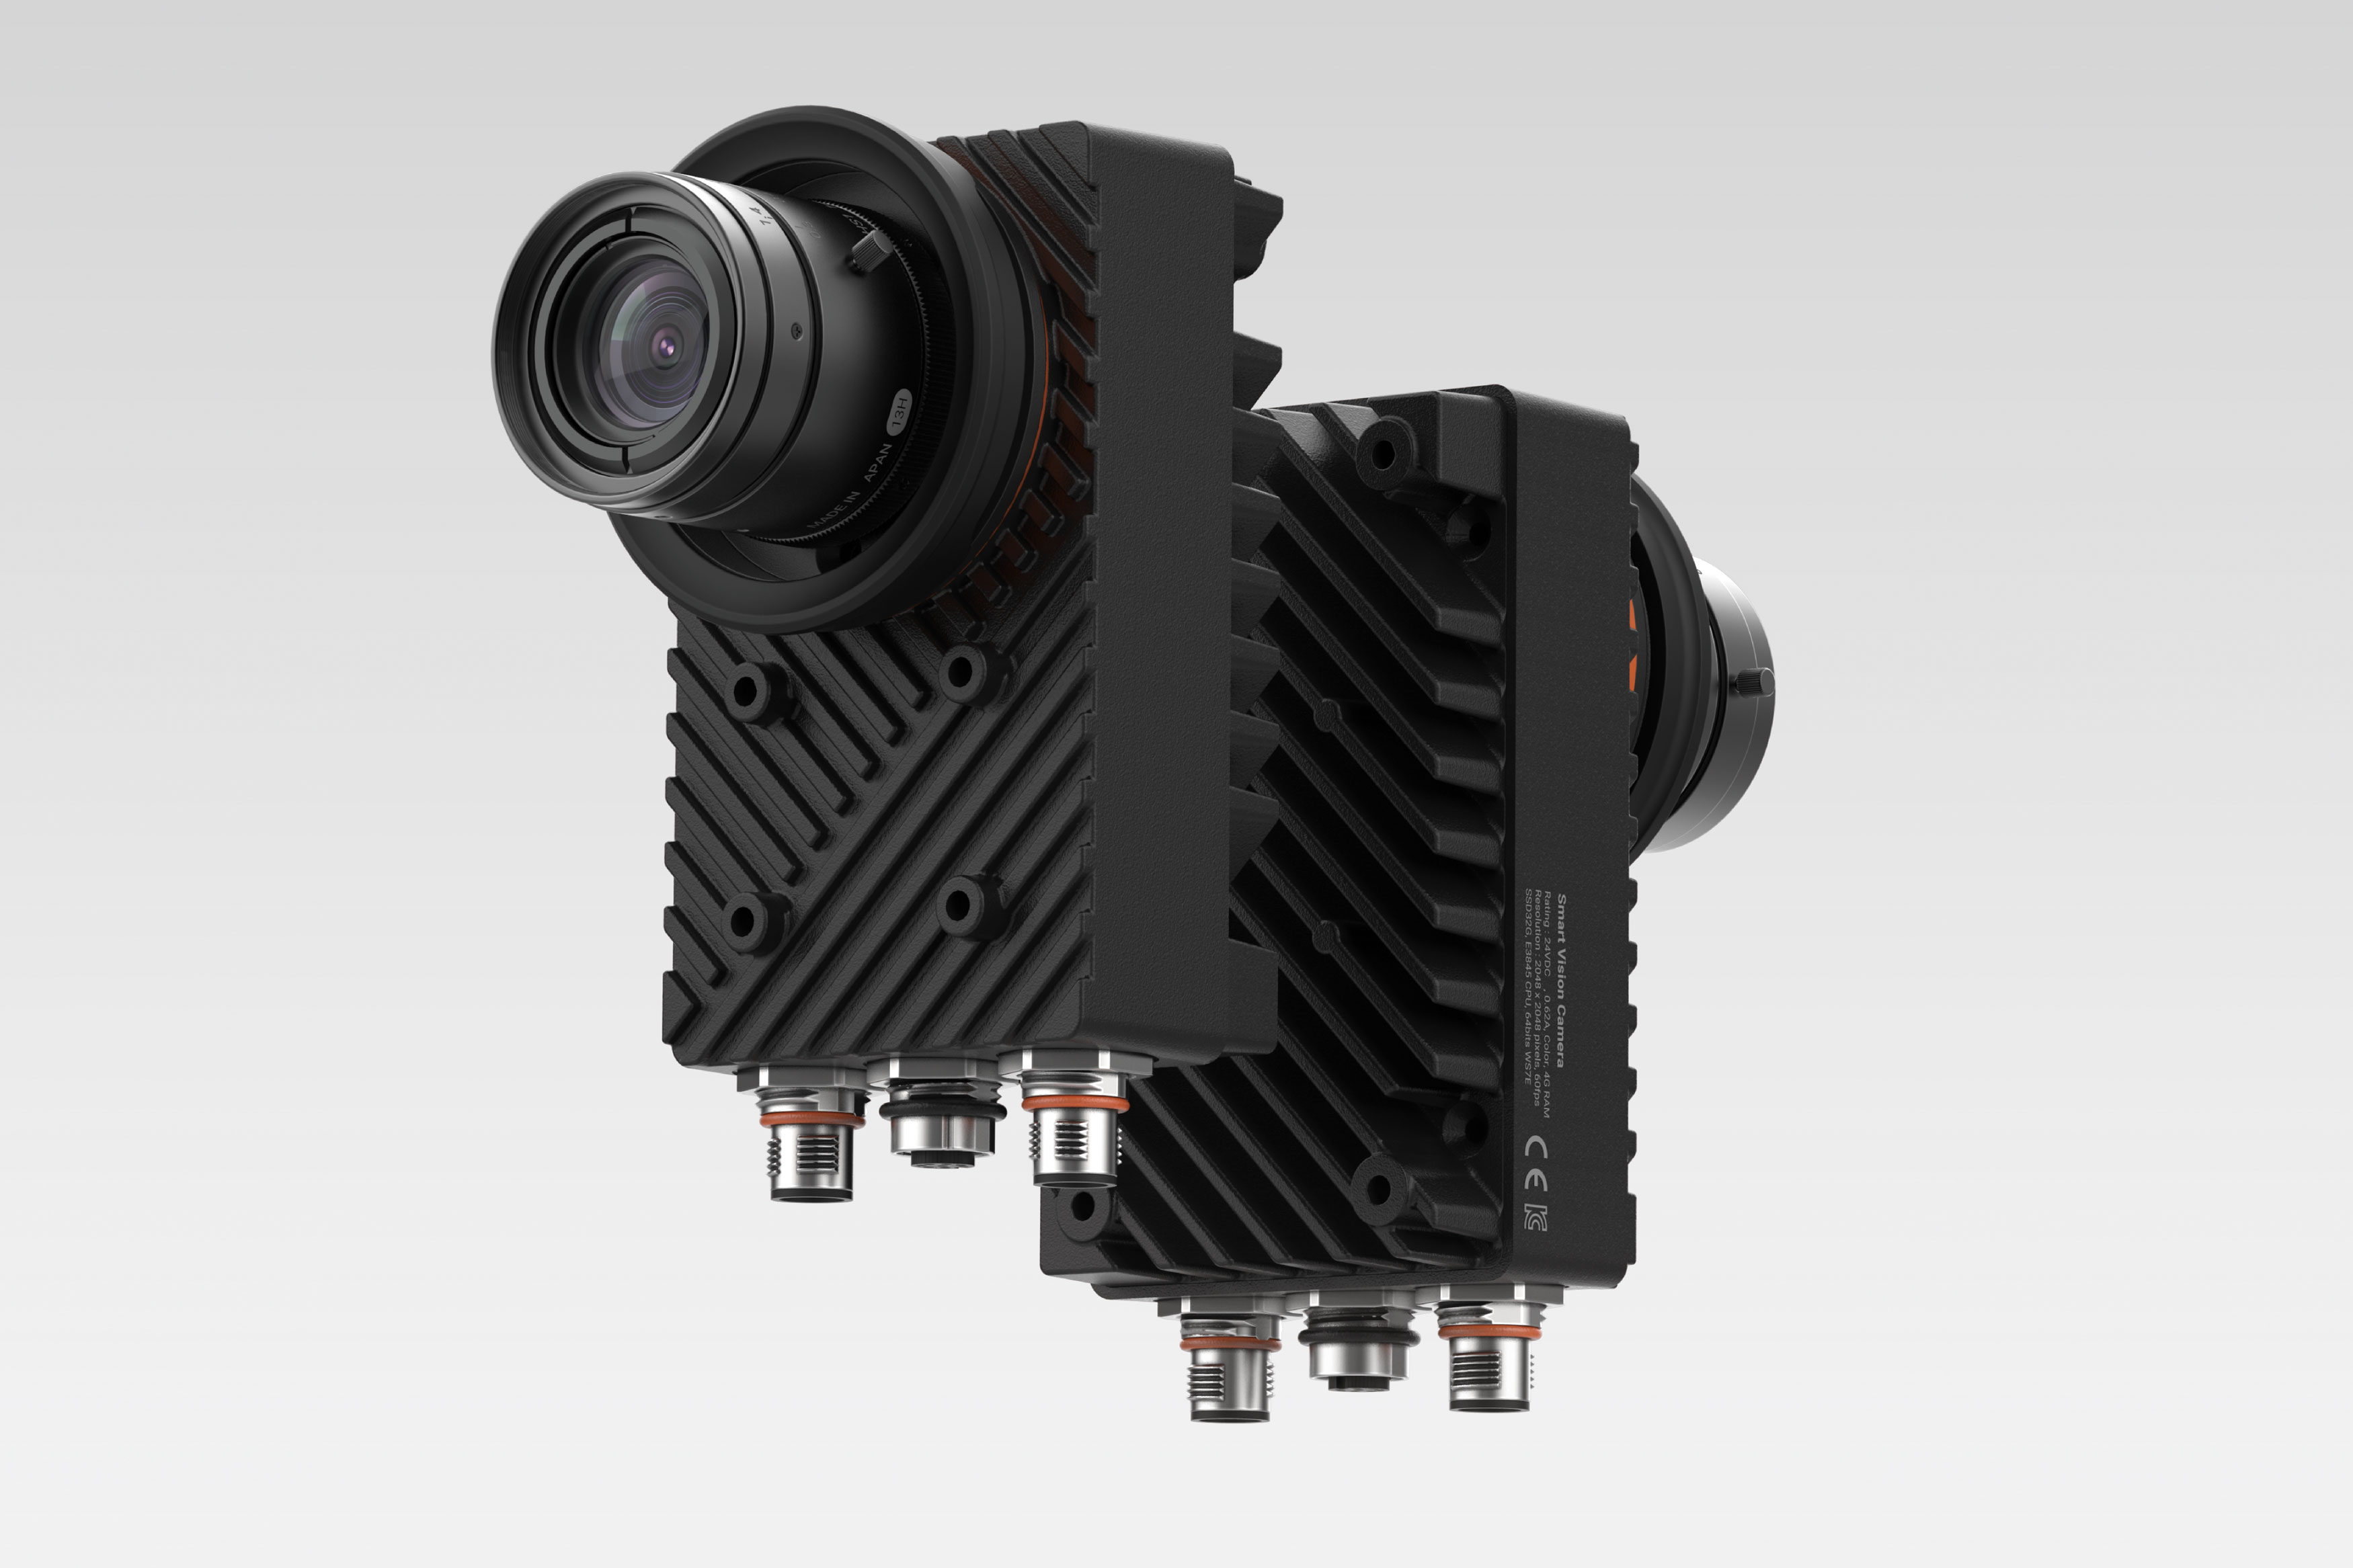 【2019 红点奖】smart vision camera / 自动化工厂智能图像捕捉摄像